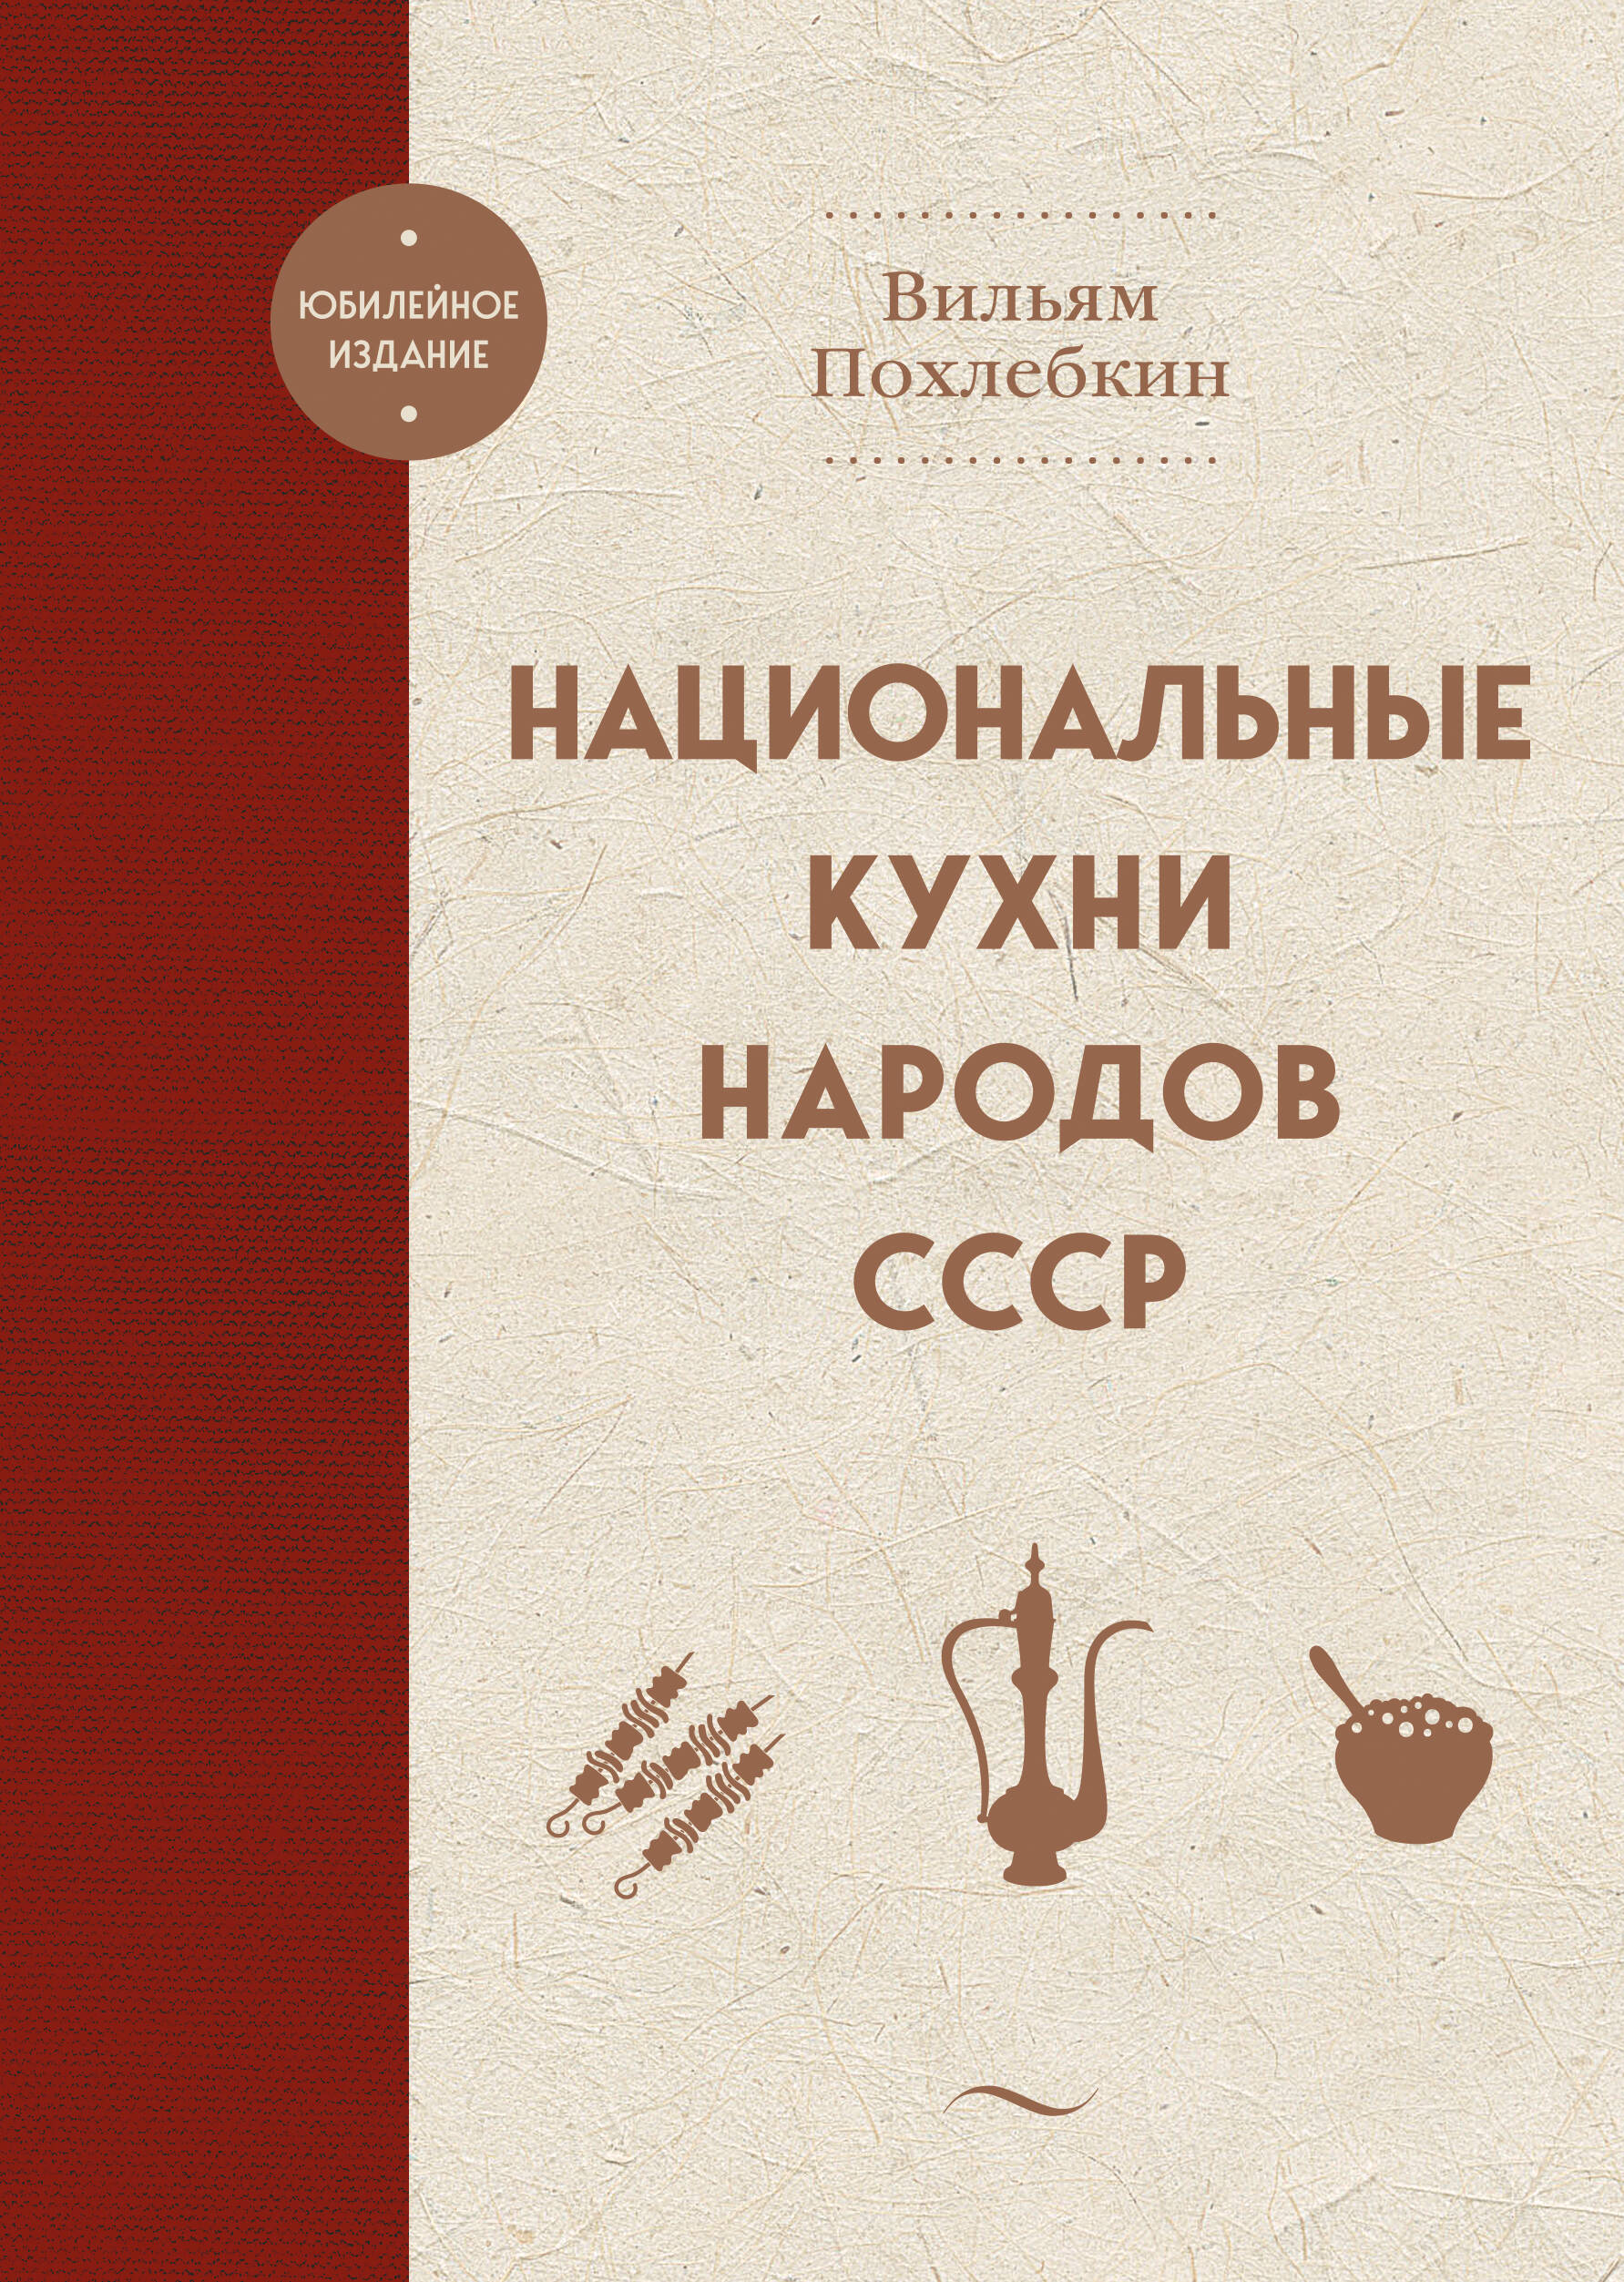 Рецепты народов СССР – «Еда»